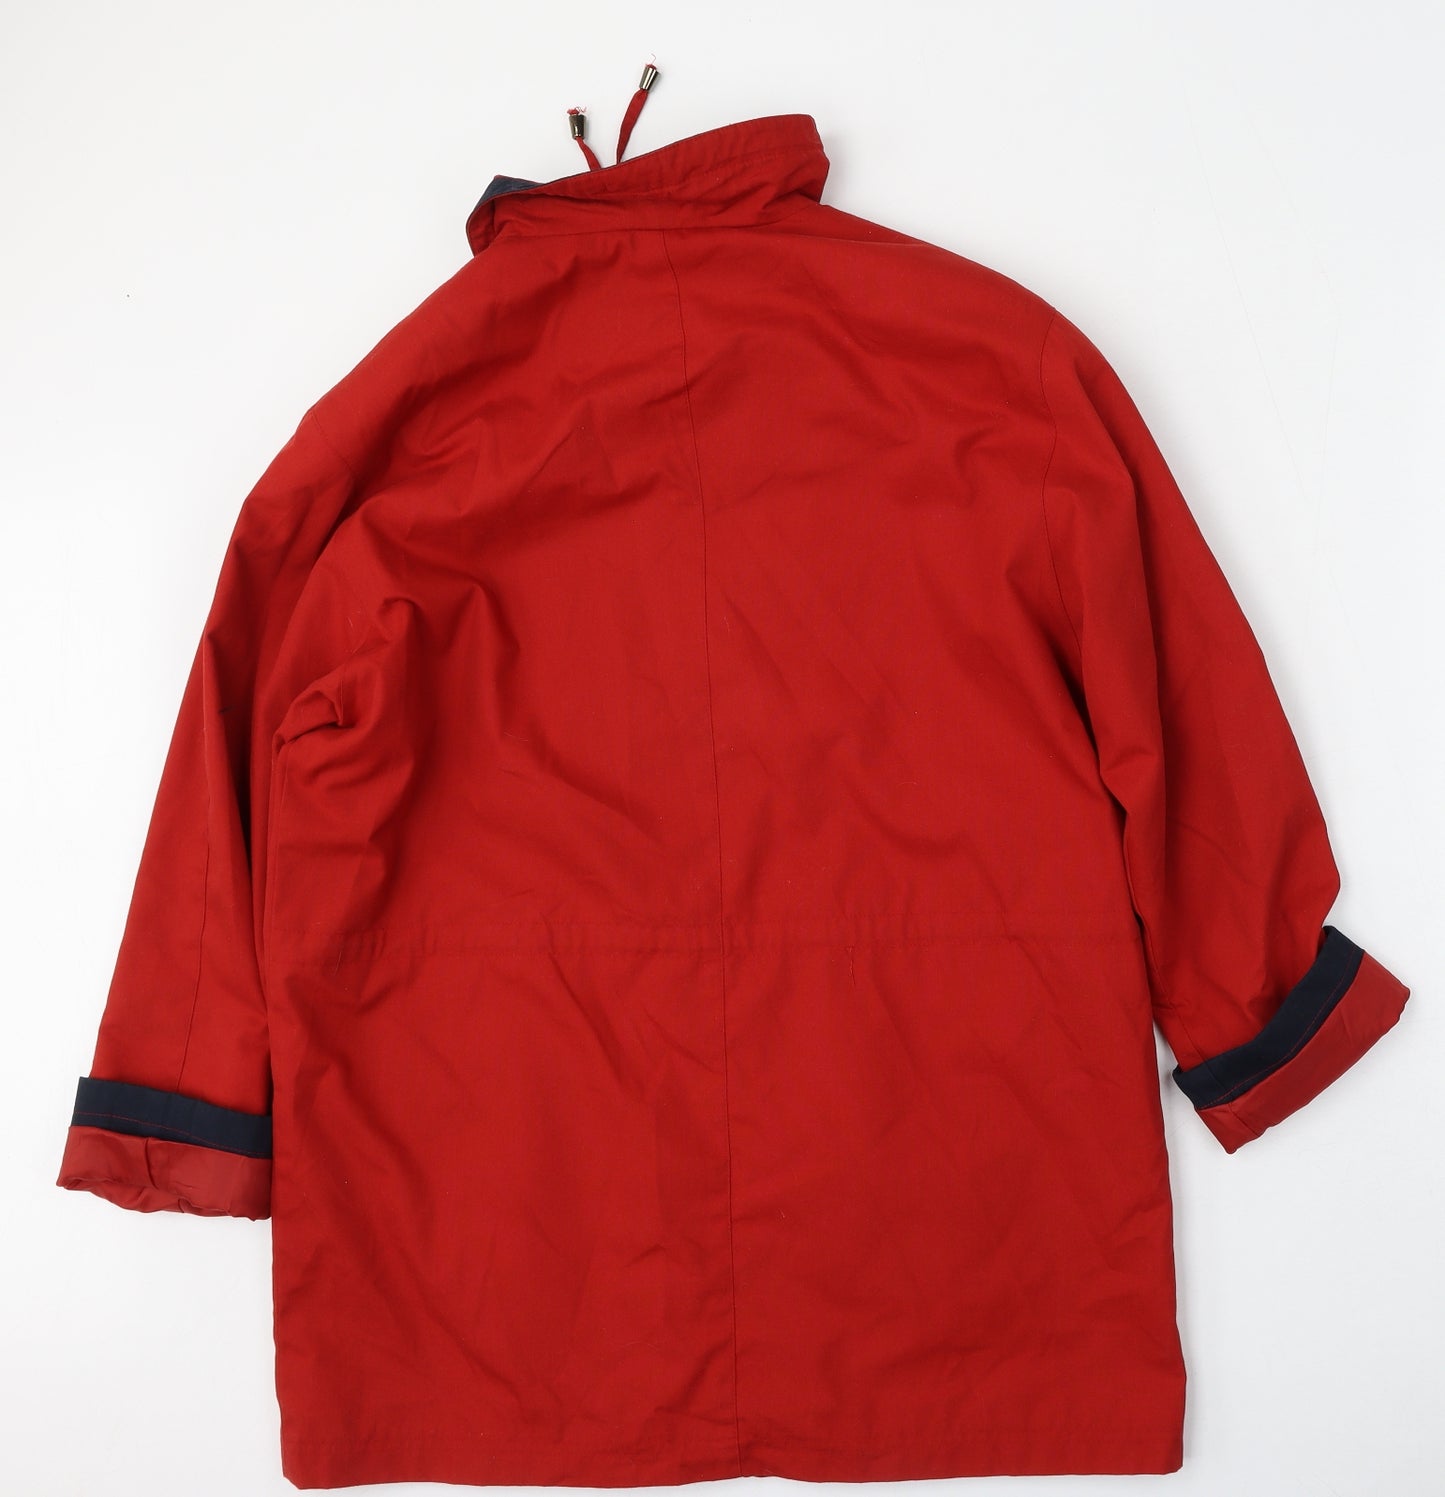 ZETA Womens Red   Jacket  Size S  Zip